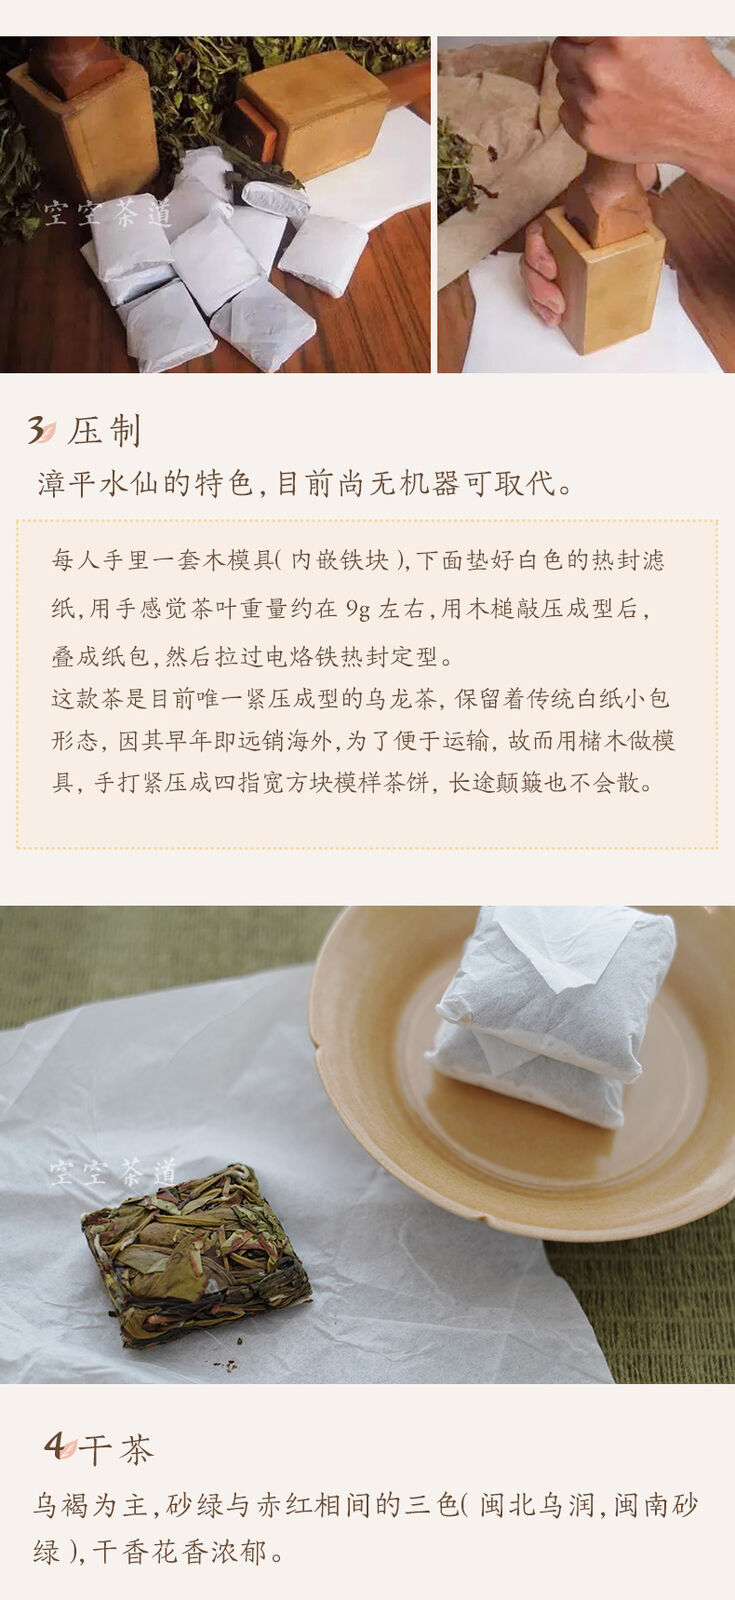 HelloYoung Zhang Ping Shui Xian Mini Tea Brick China Fujian Shui Hsien Oolong Tea 250g